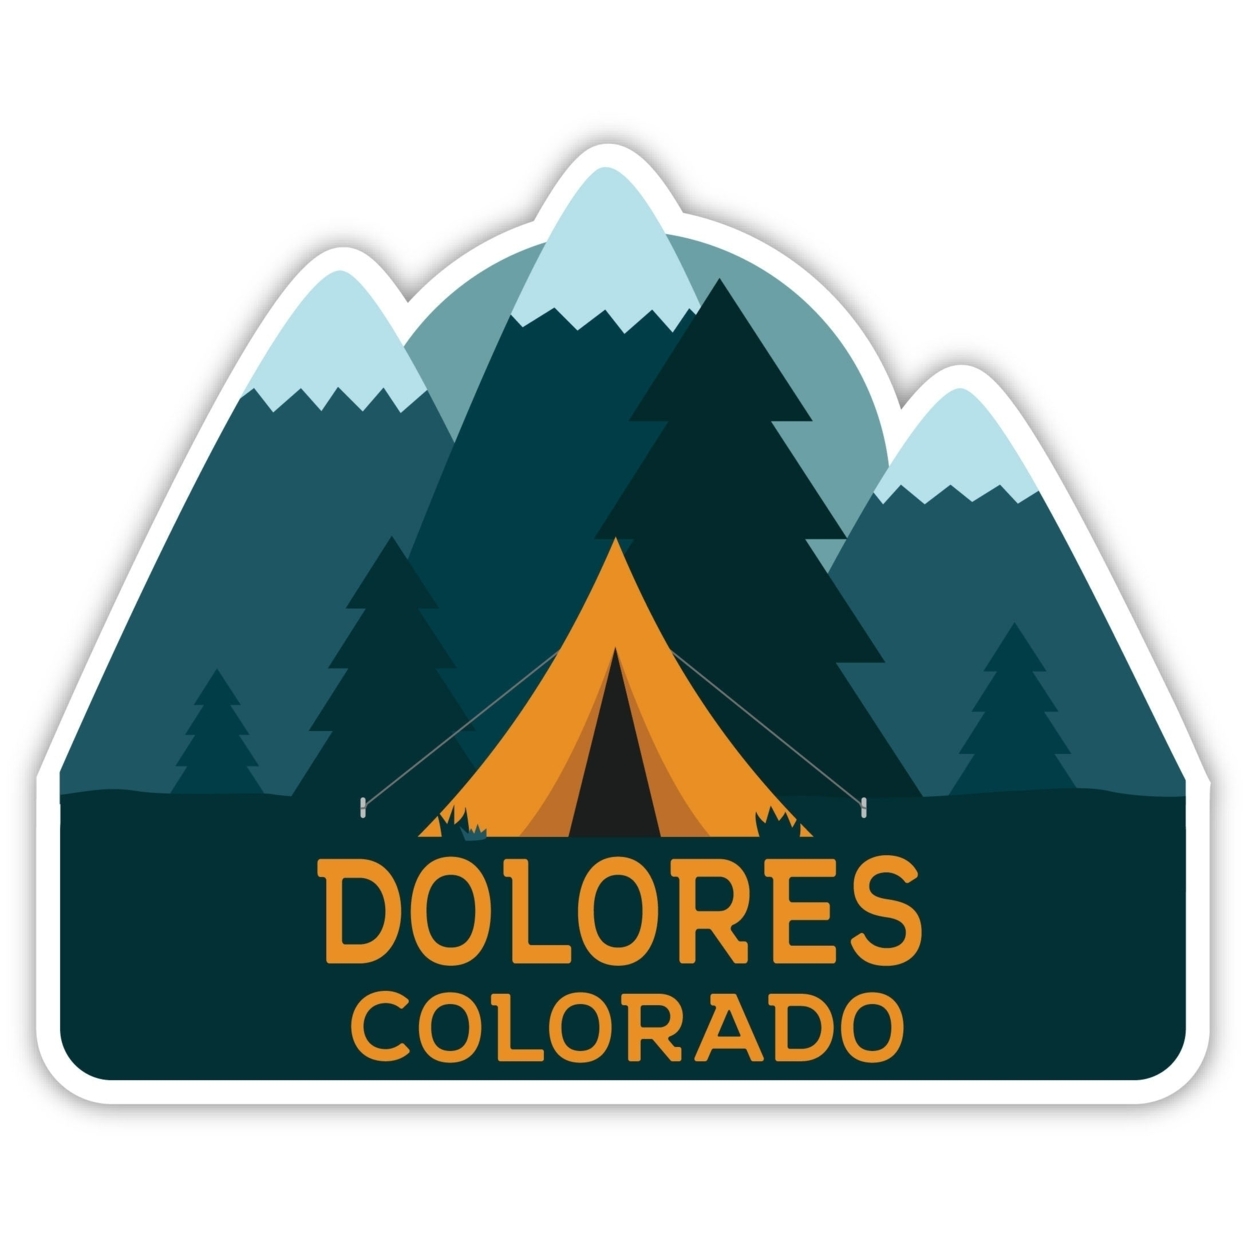 Dolores Colorado Souvenir Decorative Stickers (Choose Theme And Size) - Single Unit, 10-Inch, Tent